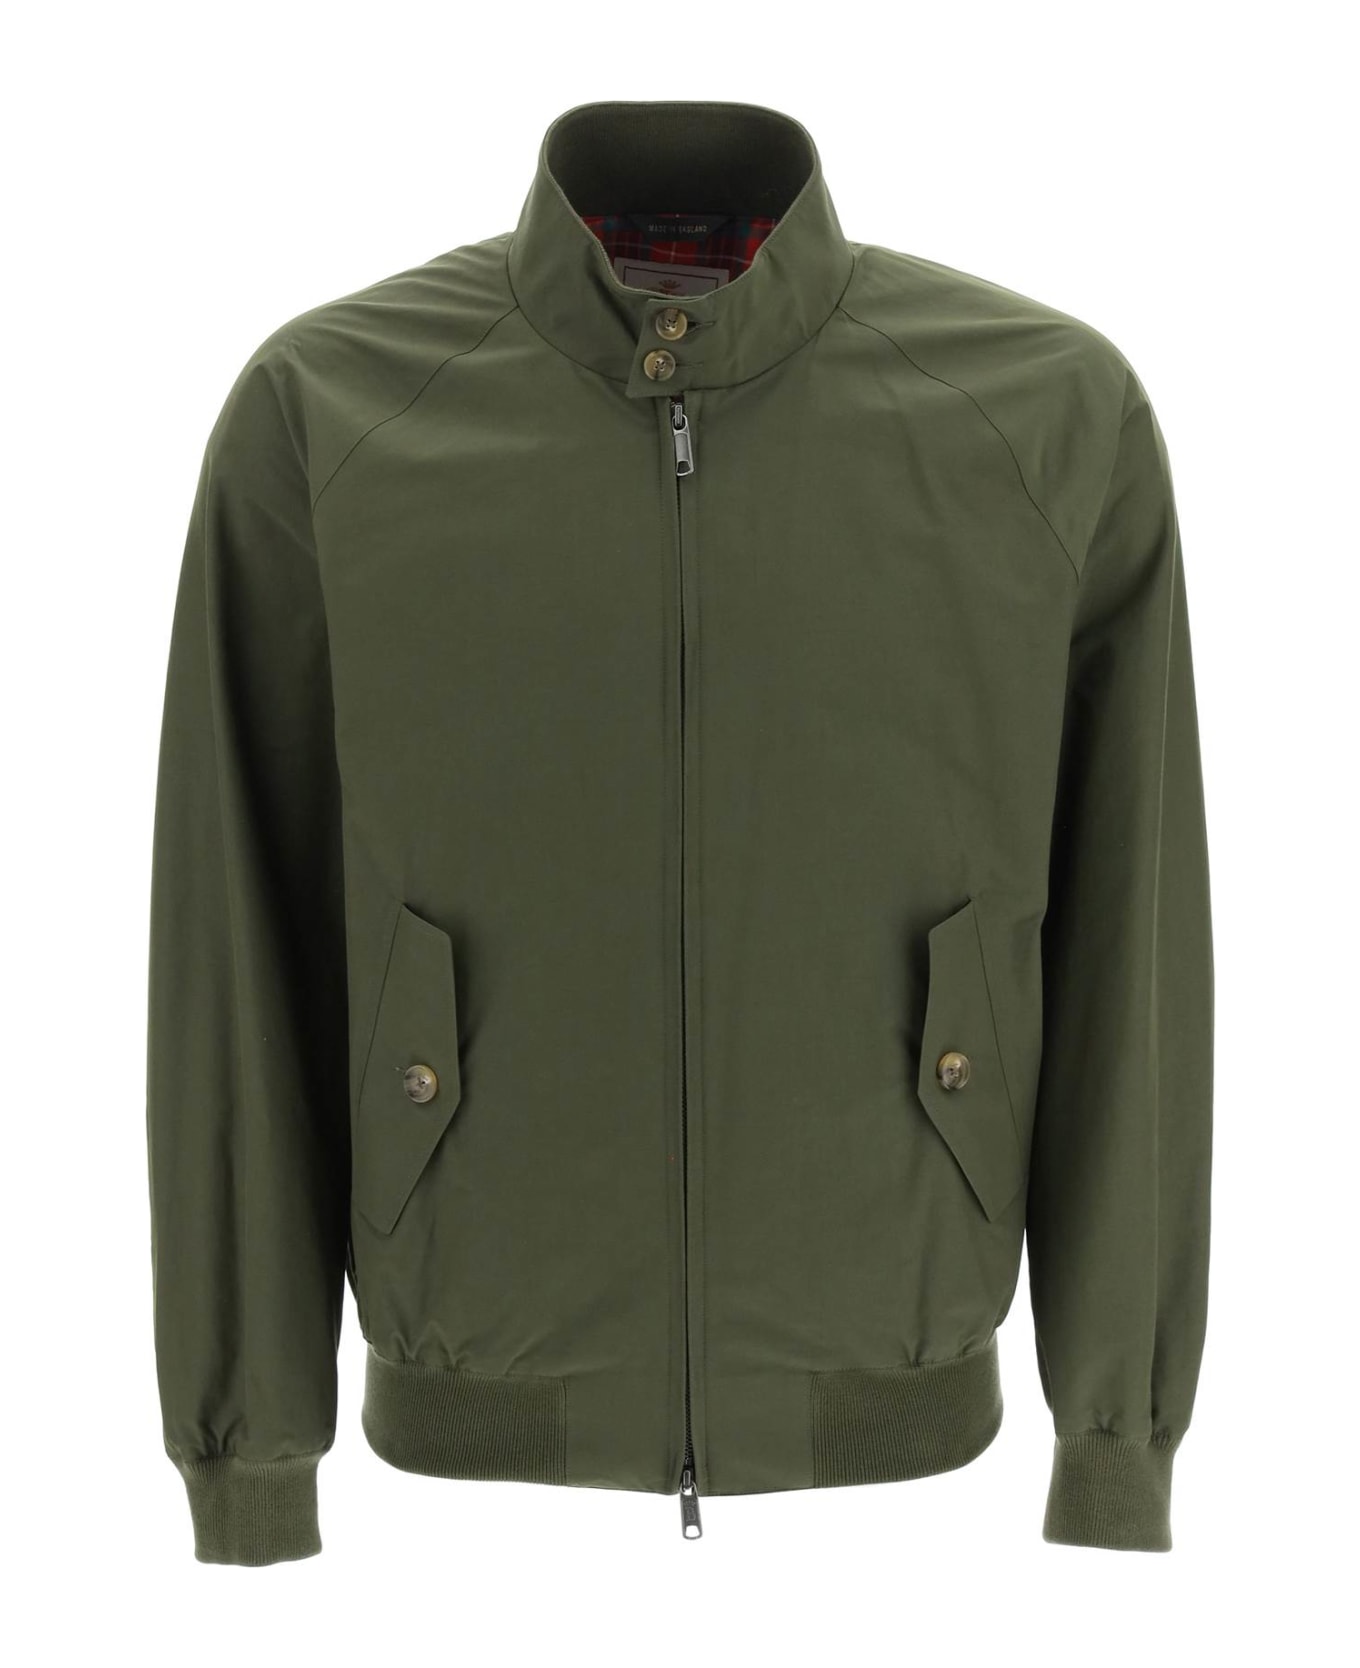 Baracuta G9 Harrington Jacket - BEECH (Green)